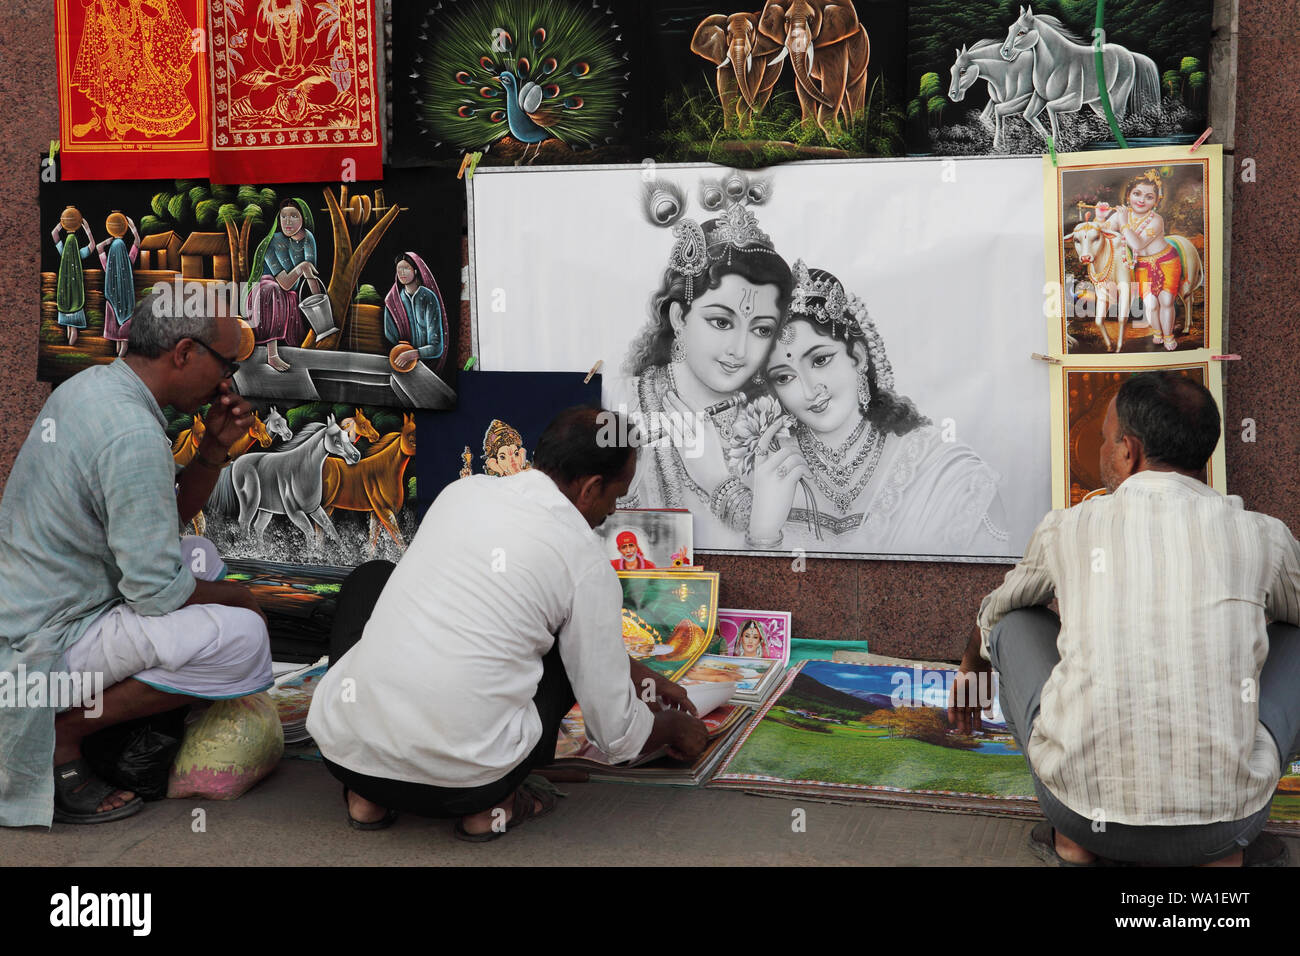 Bilder von verschiedenen Hindu-Gottheiten Verkauf an einem Marktstand Stockfoto